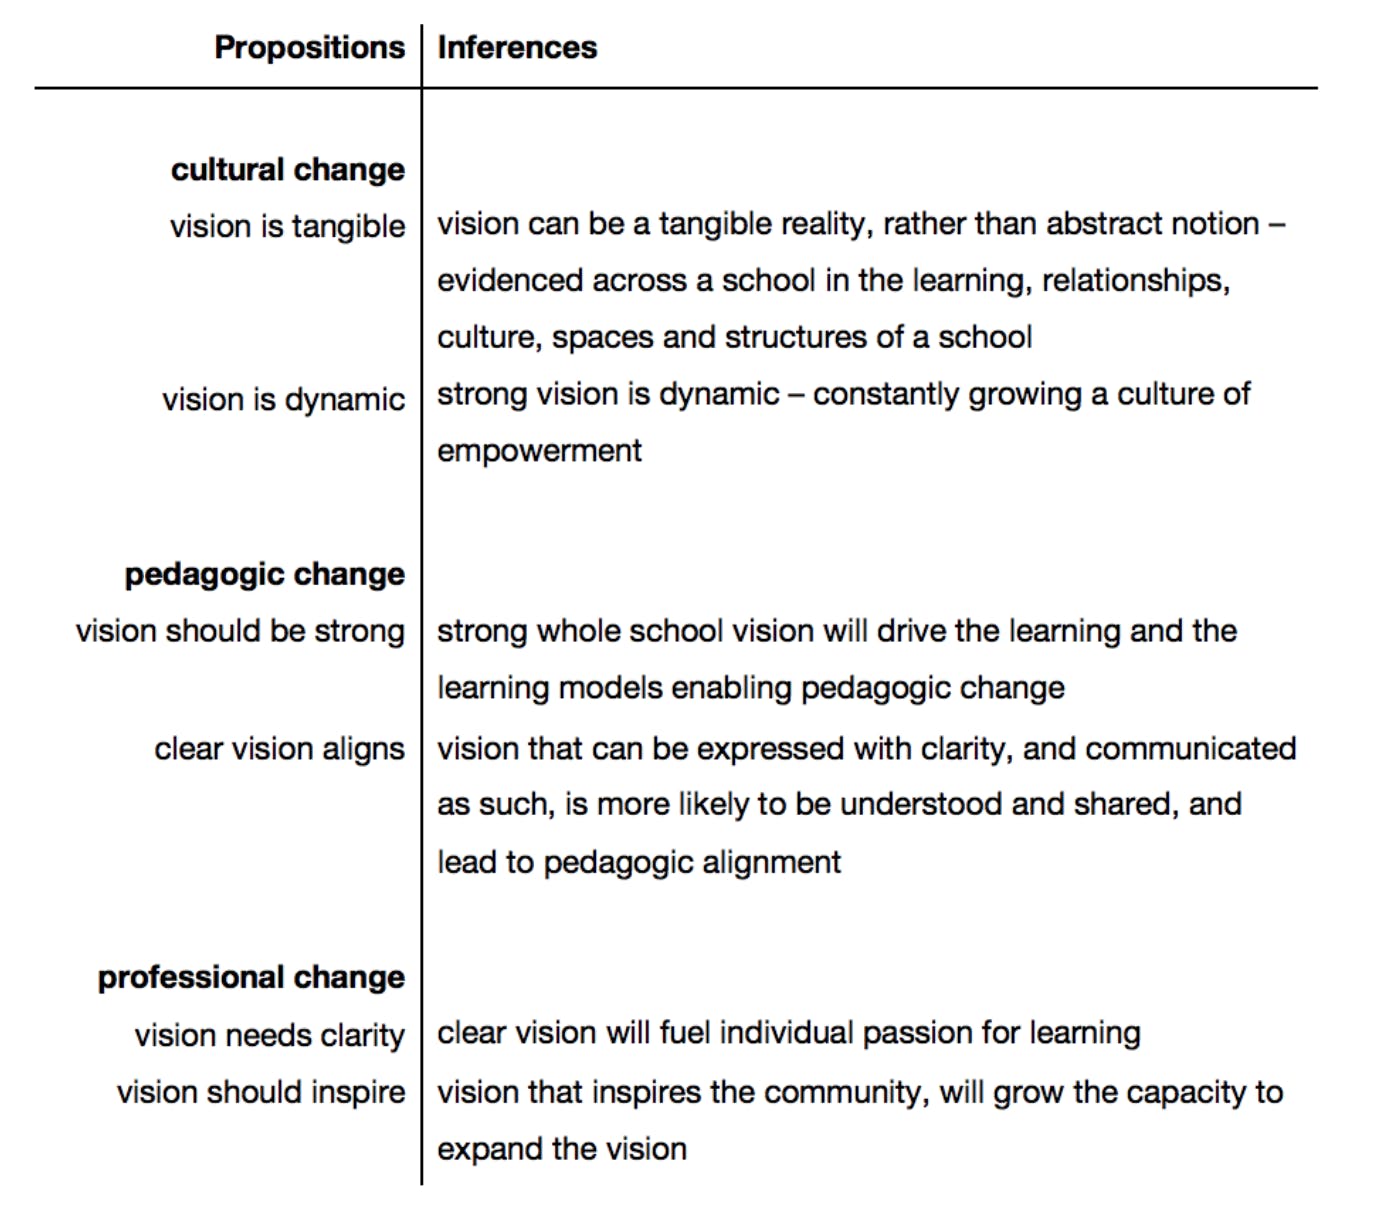 cultural, pedagogic, professional vision